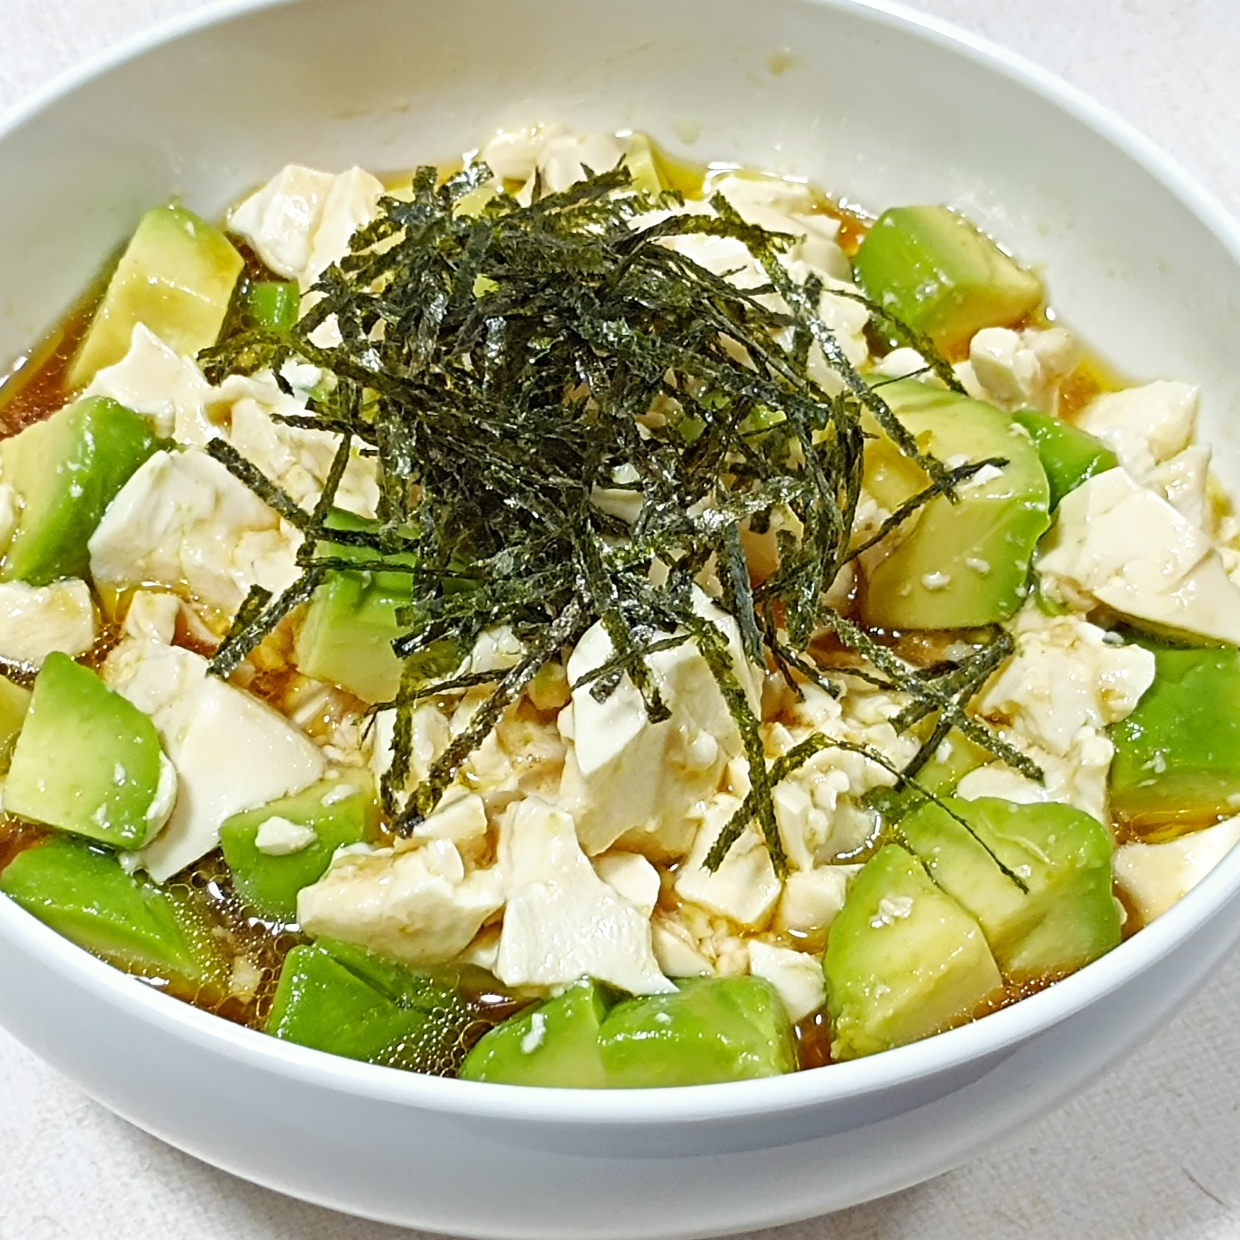  「アボカド」を使って夕食にもう一品！豆腐と調味料で混ぜるだけの簡単レシピ 